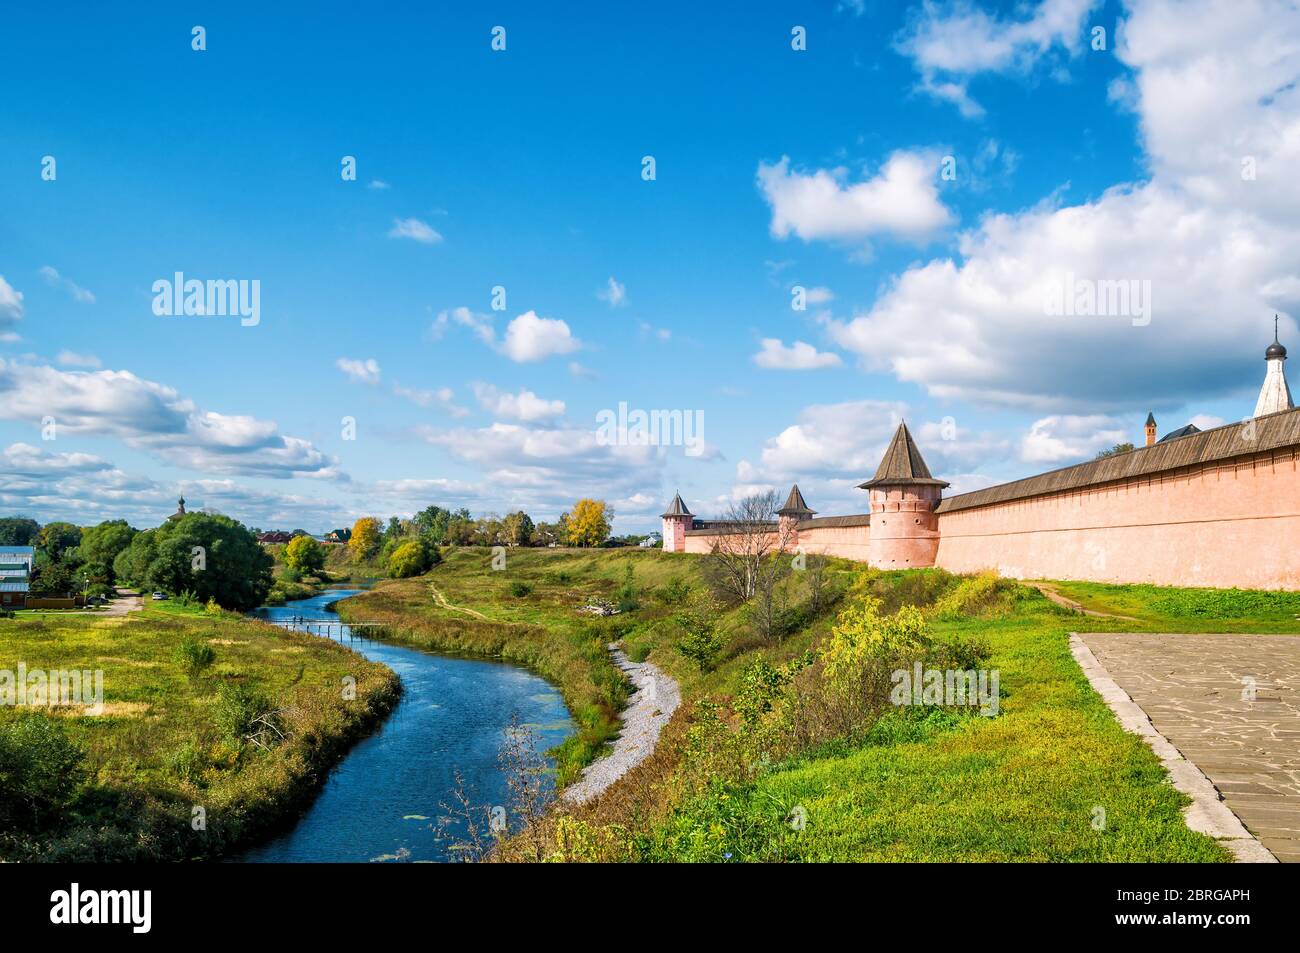 Panorama der antiken Stadt Susdal, Russland. Kloster St. Euthymius. Susdal ist der Ort des Goldenen Rings Russlands. Stockfoto